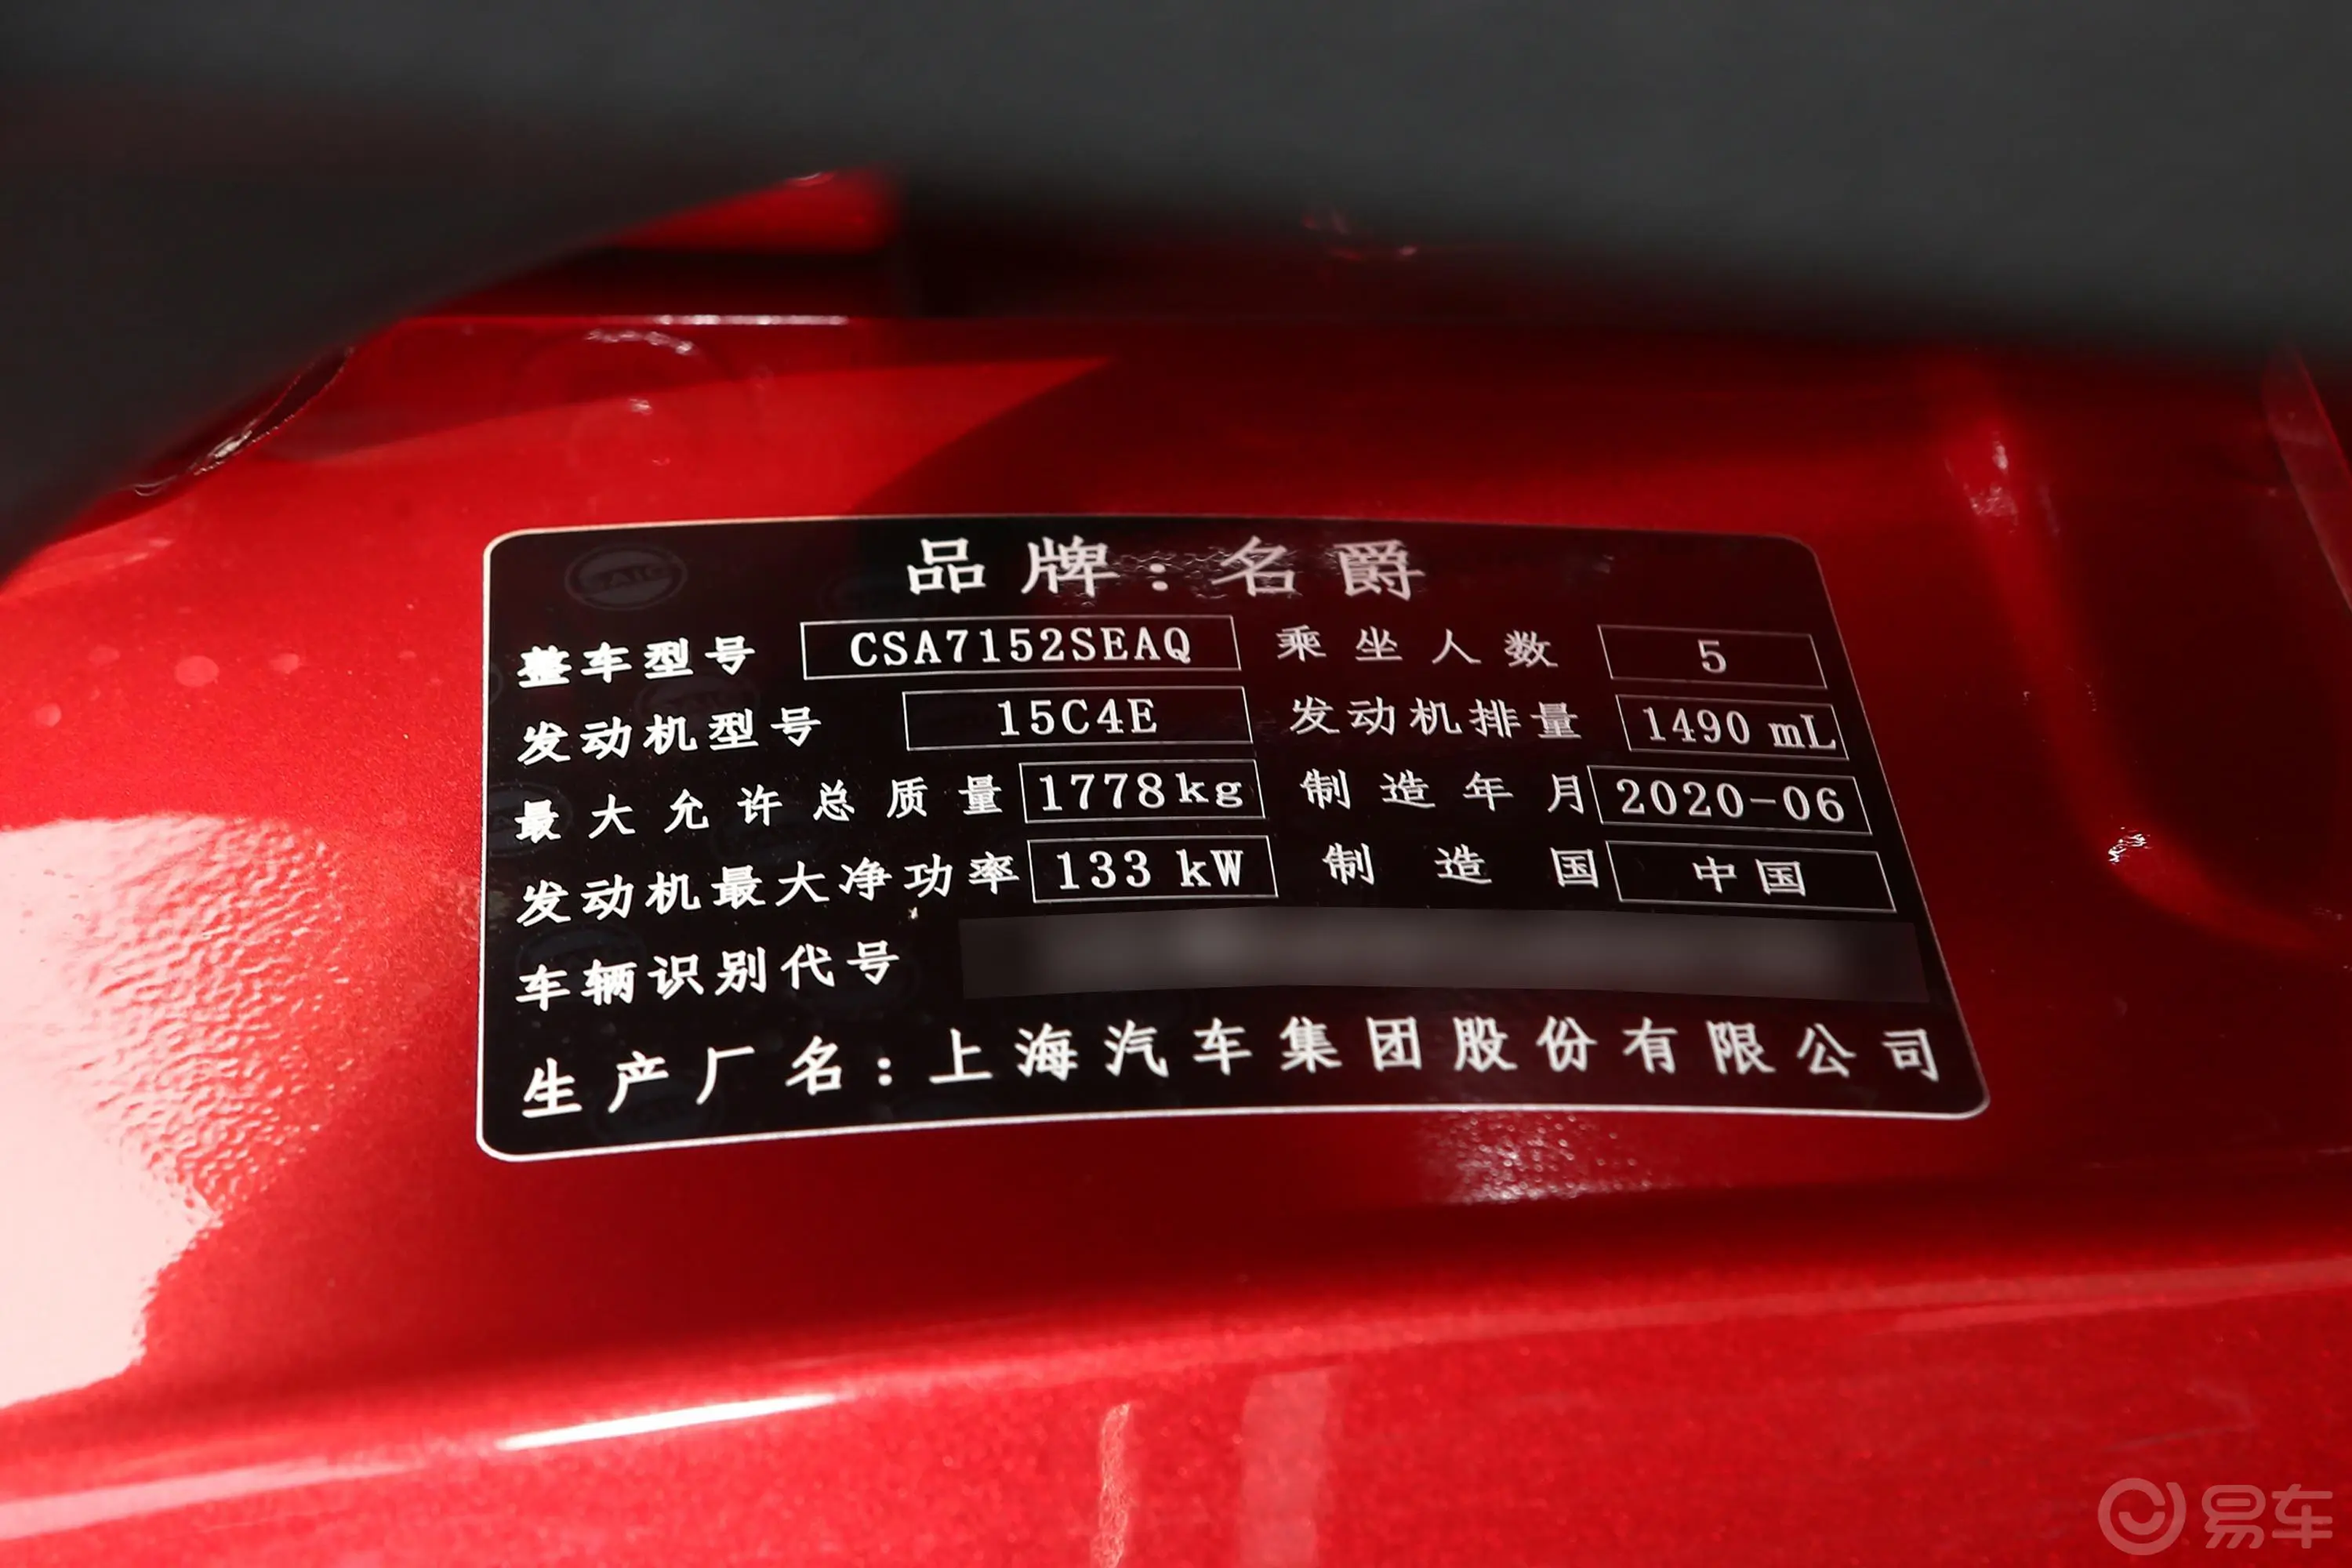 MG61.5T 双离合 Trophy 豪华版车辆信息铭牌